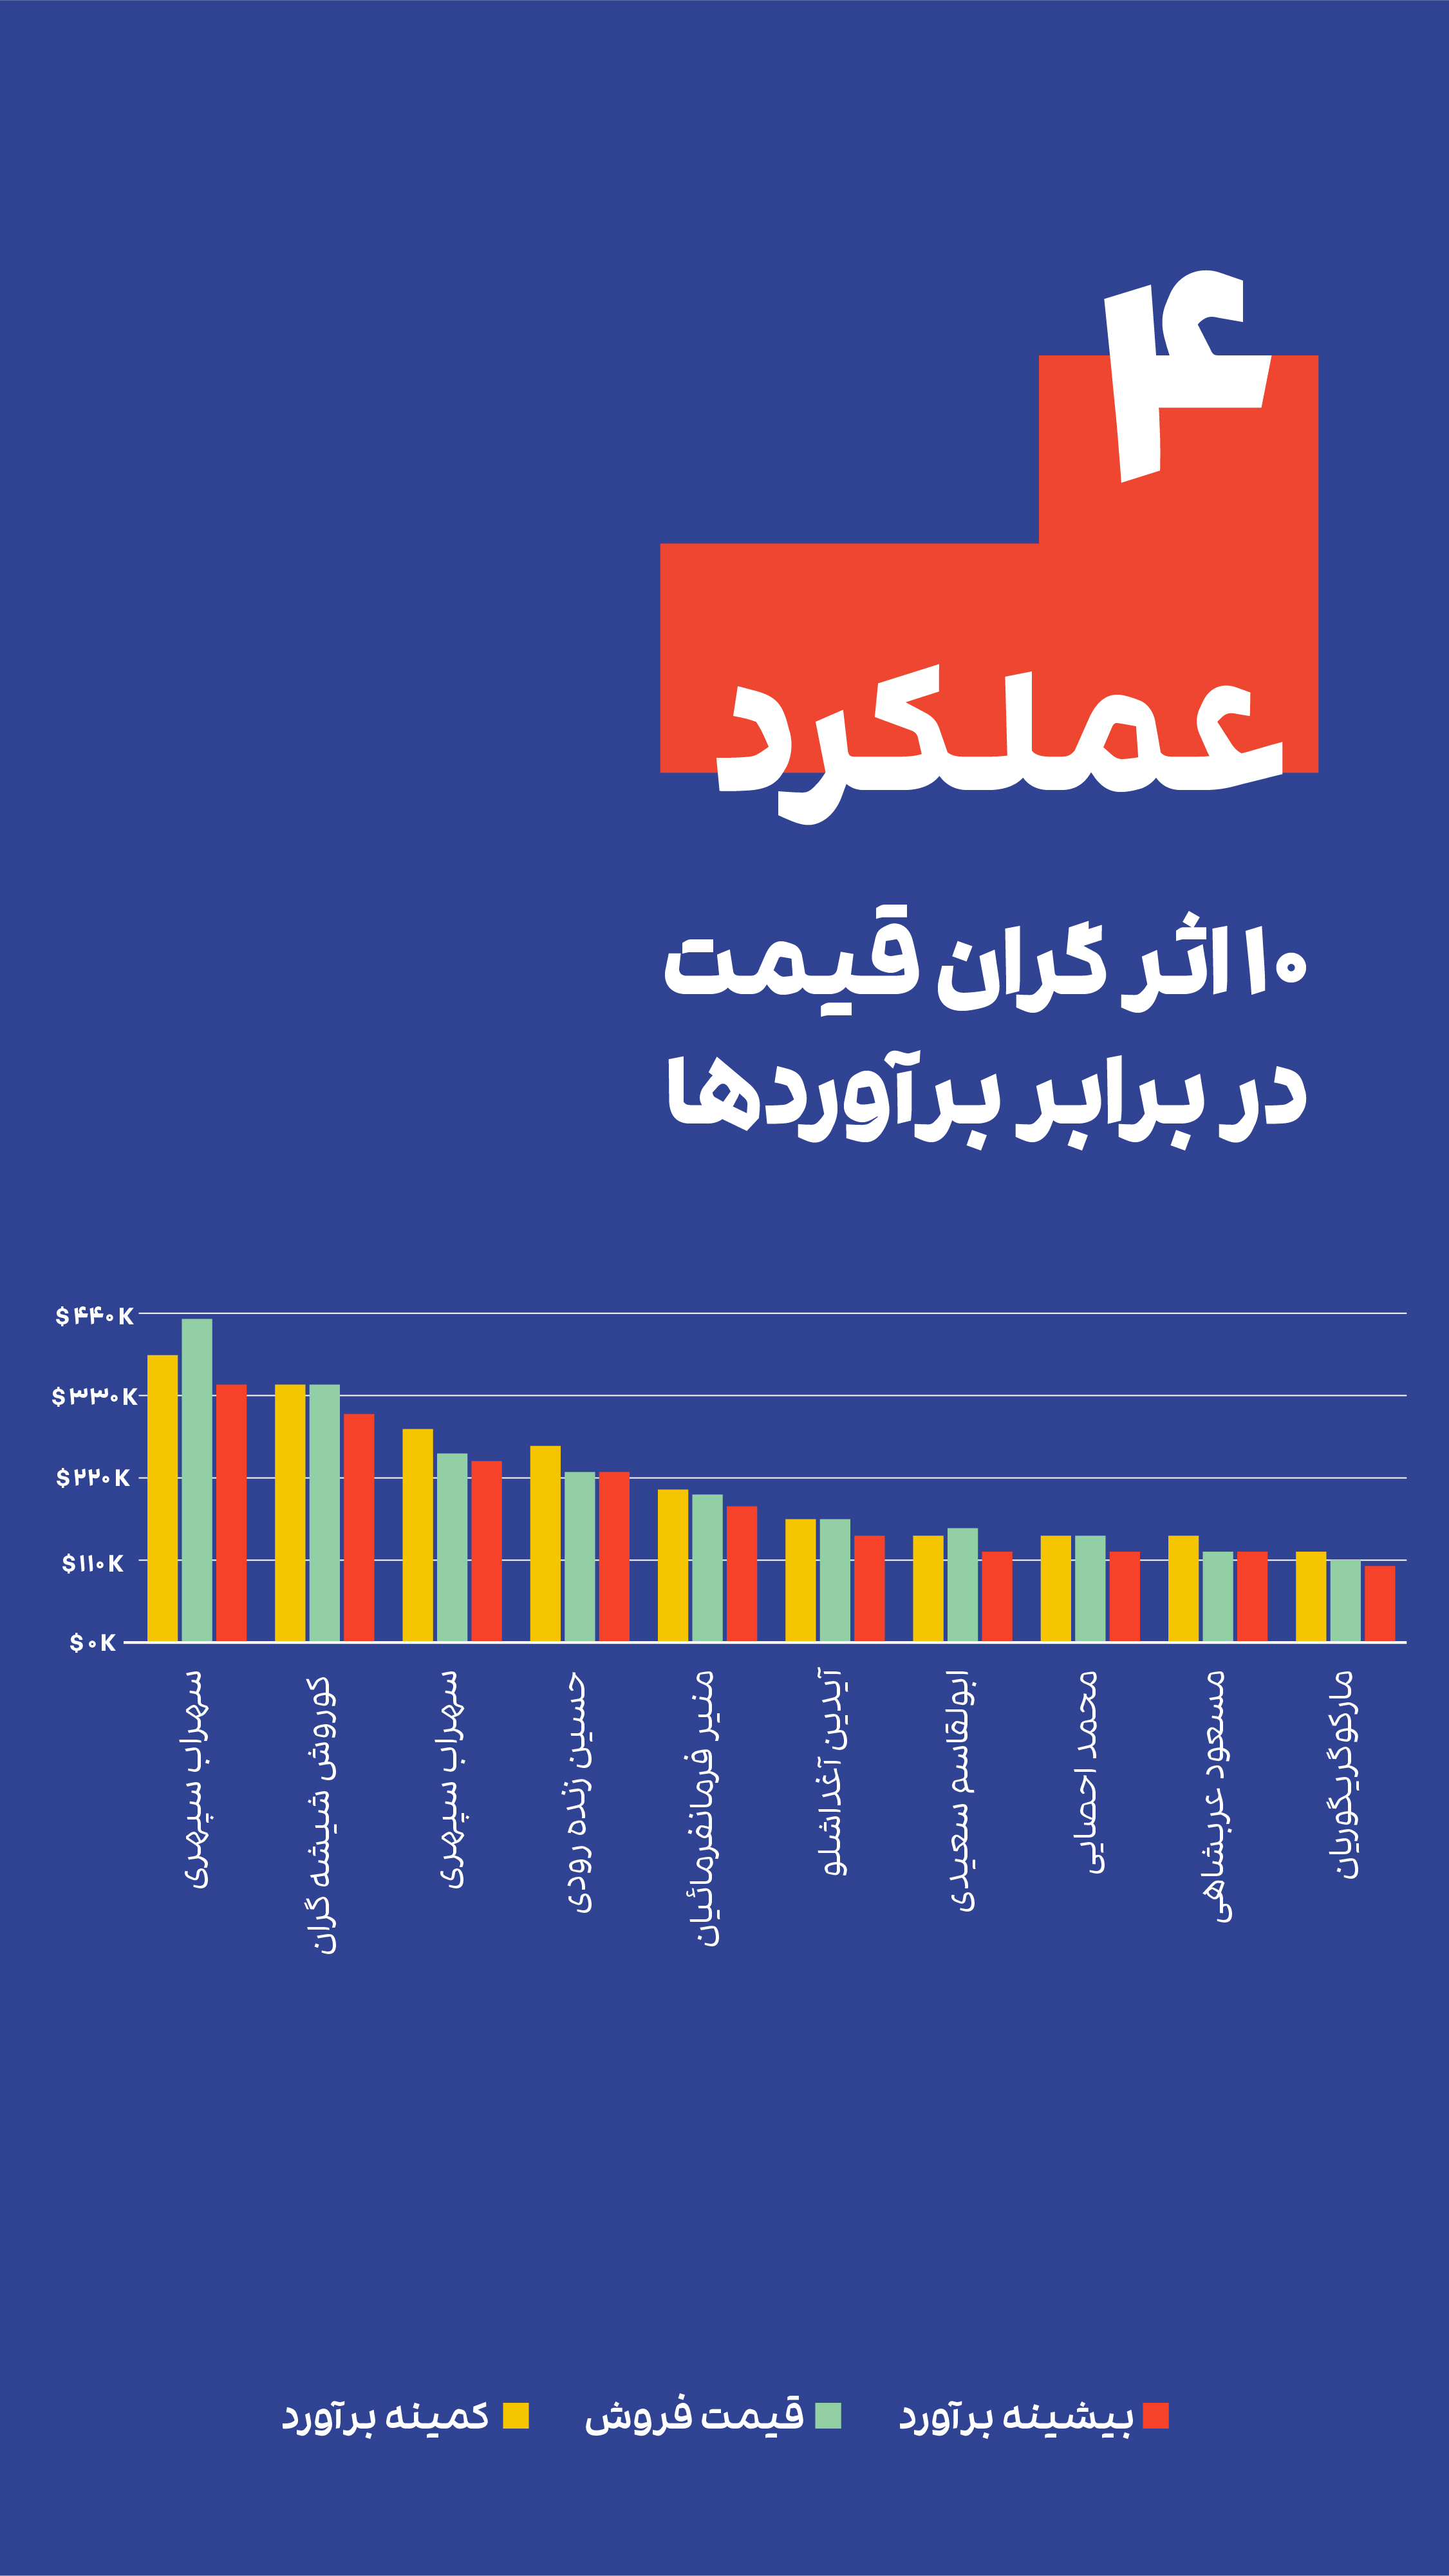 گزارش عملکرد هفدهمین حراج تهران